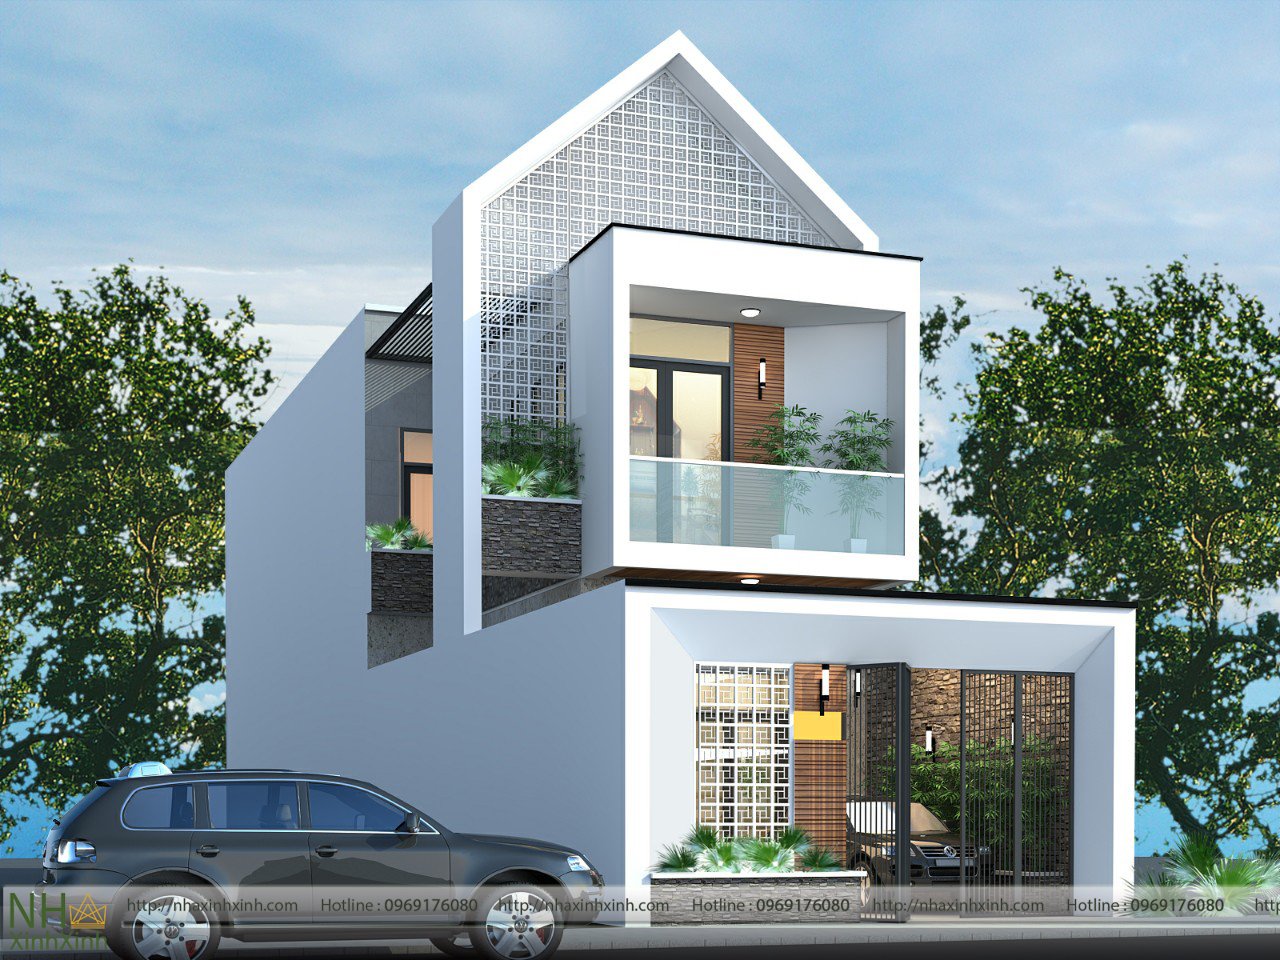 Báo giá xây nhà trọn gói Quy Nhơn - Bình Định